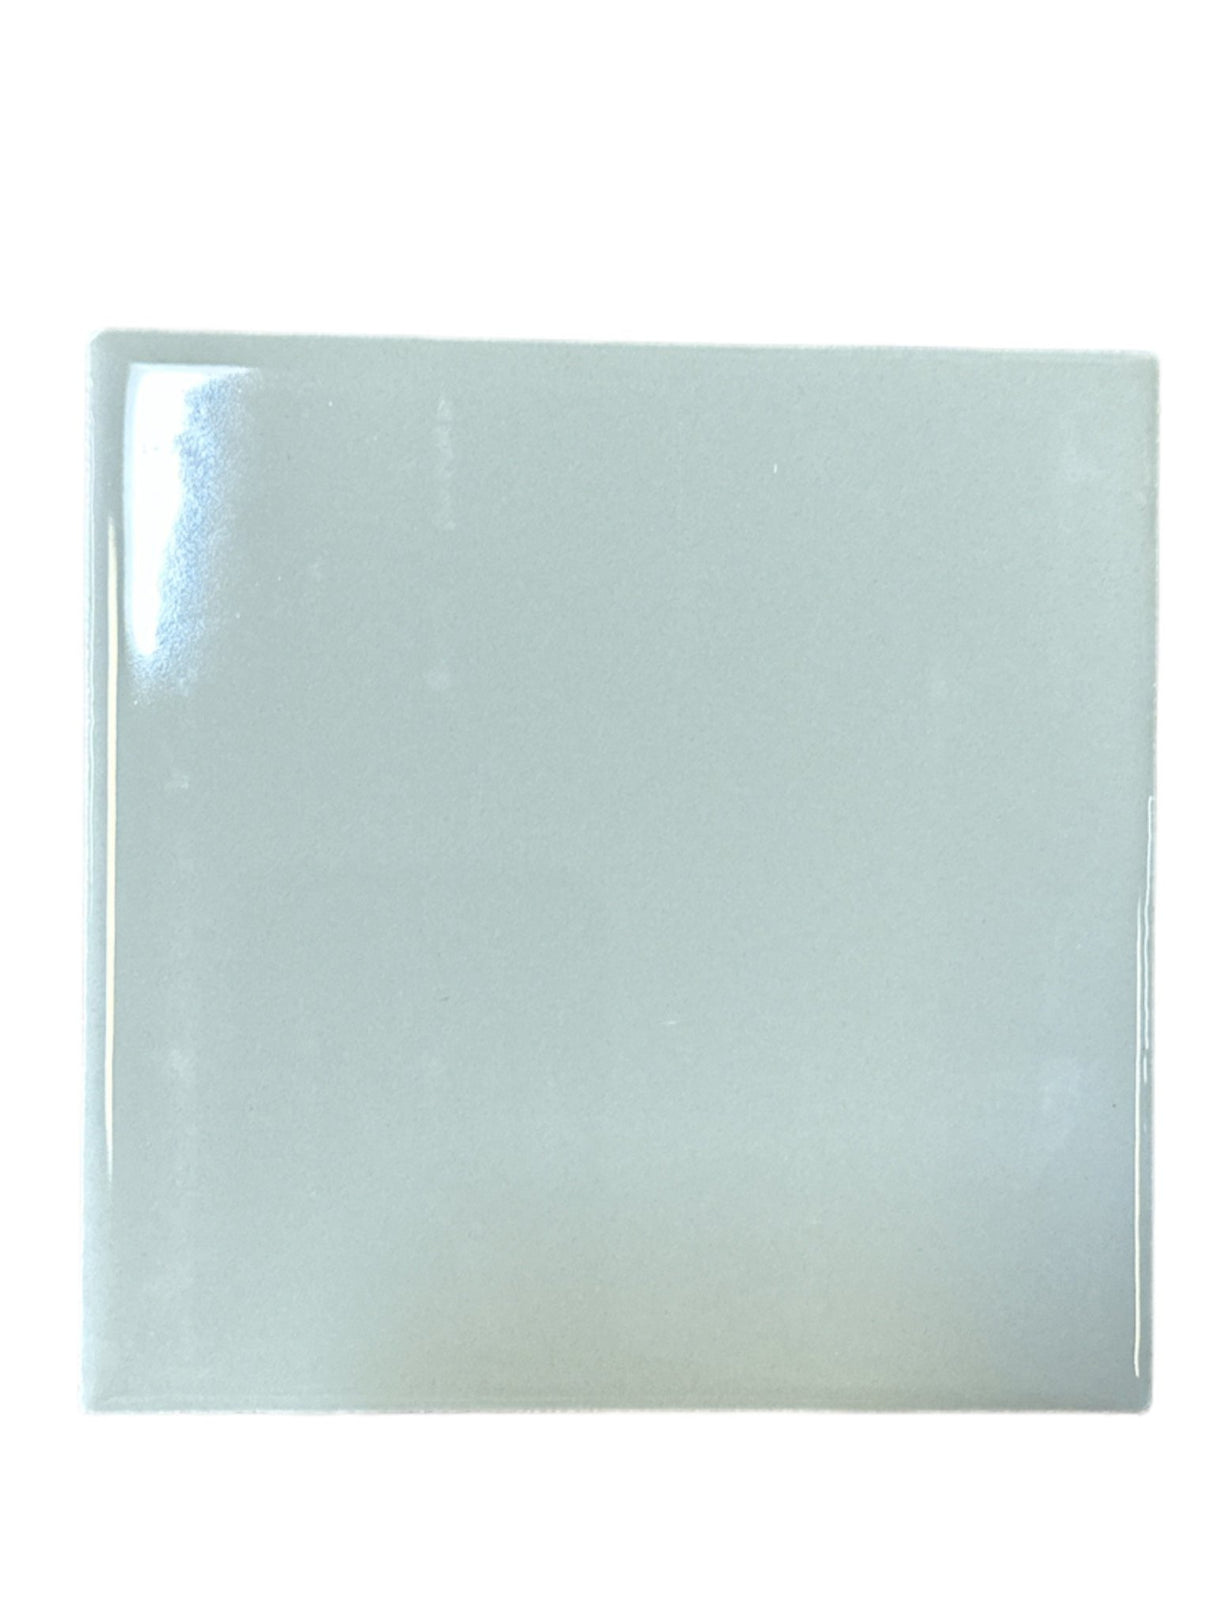 Daltile 0021 - Aspen Brillante Claro 4" x 4" Wall Tile - 100 Pack